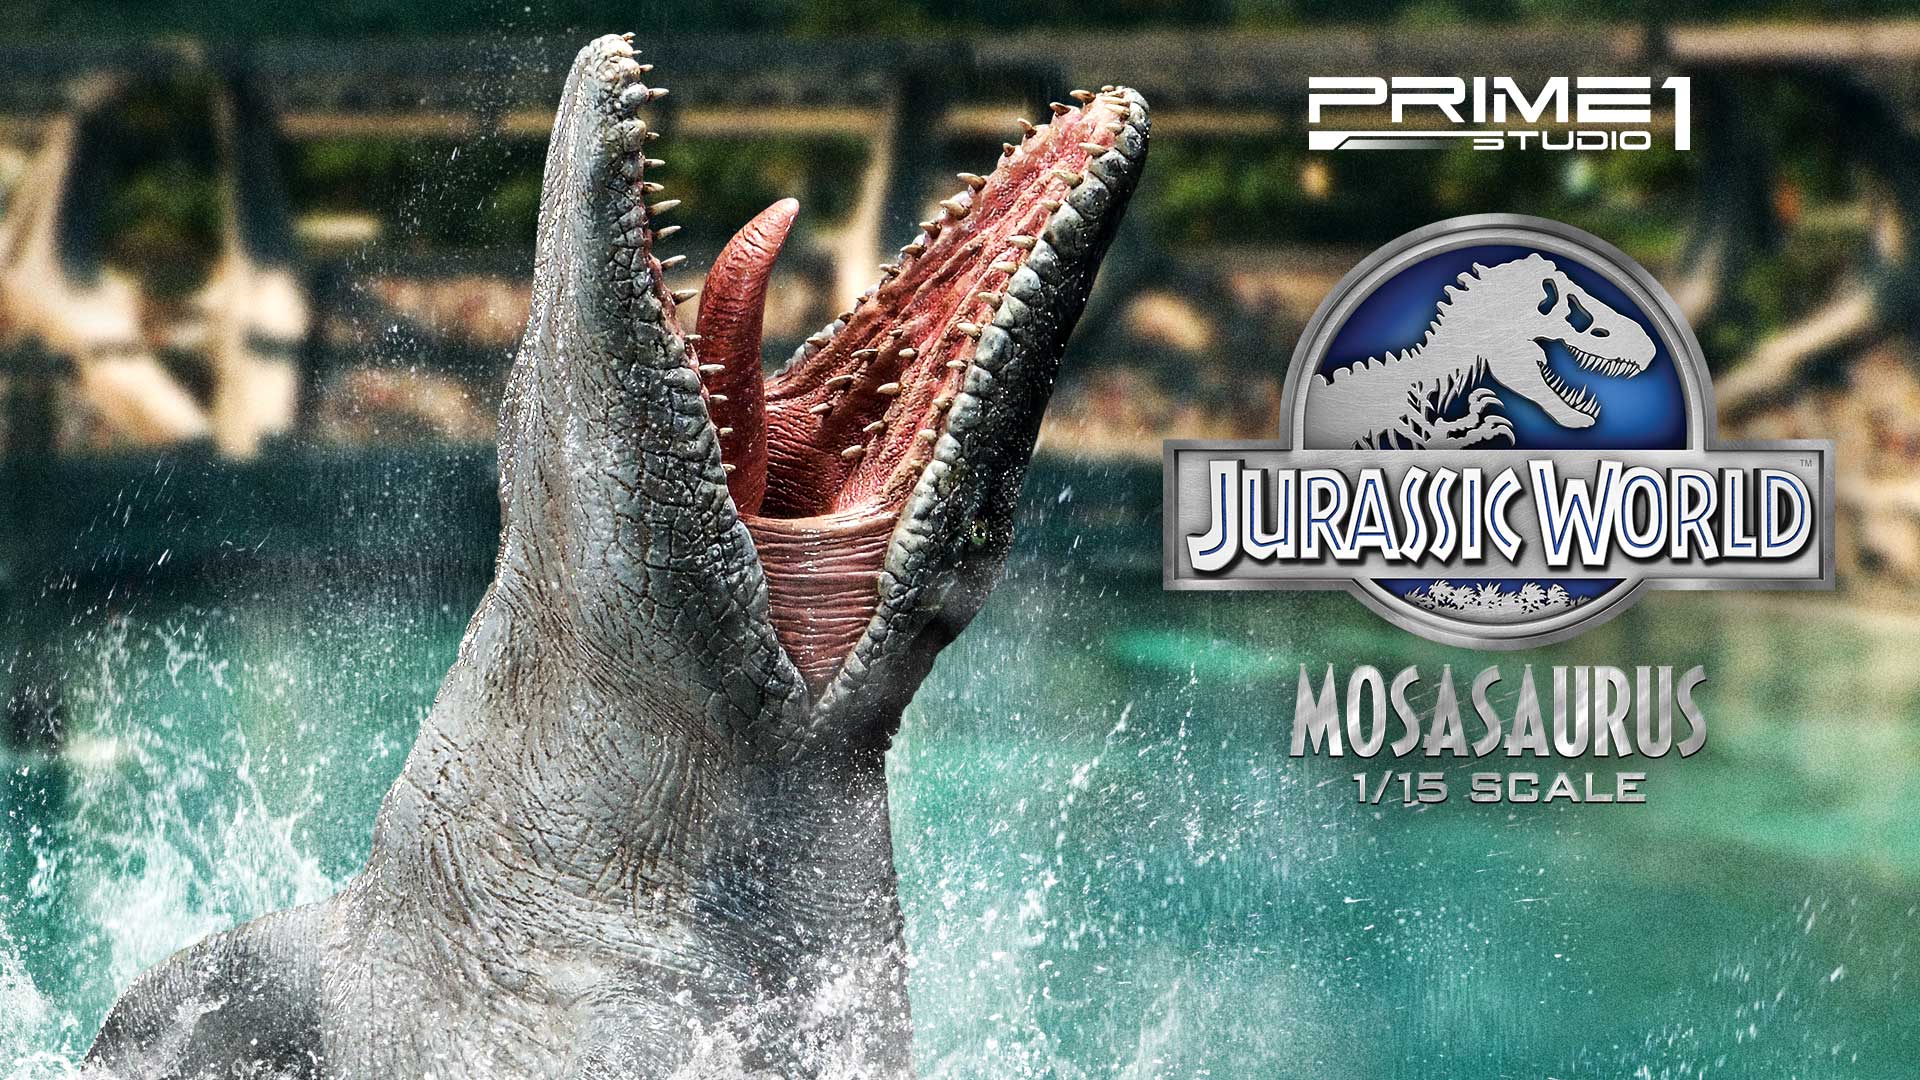 ジュラシック・ワールドで絶大な存在感を放った人気恐竜『モササウルス』が横幅“90cmオーバー”の迫力サイズで登場！